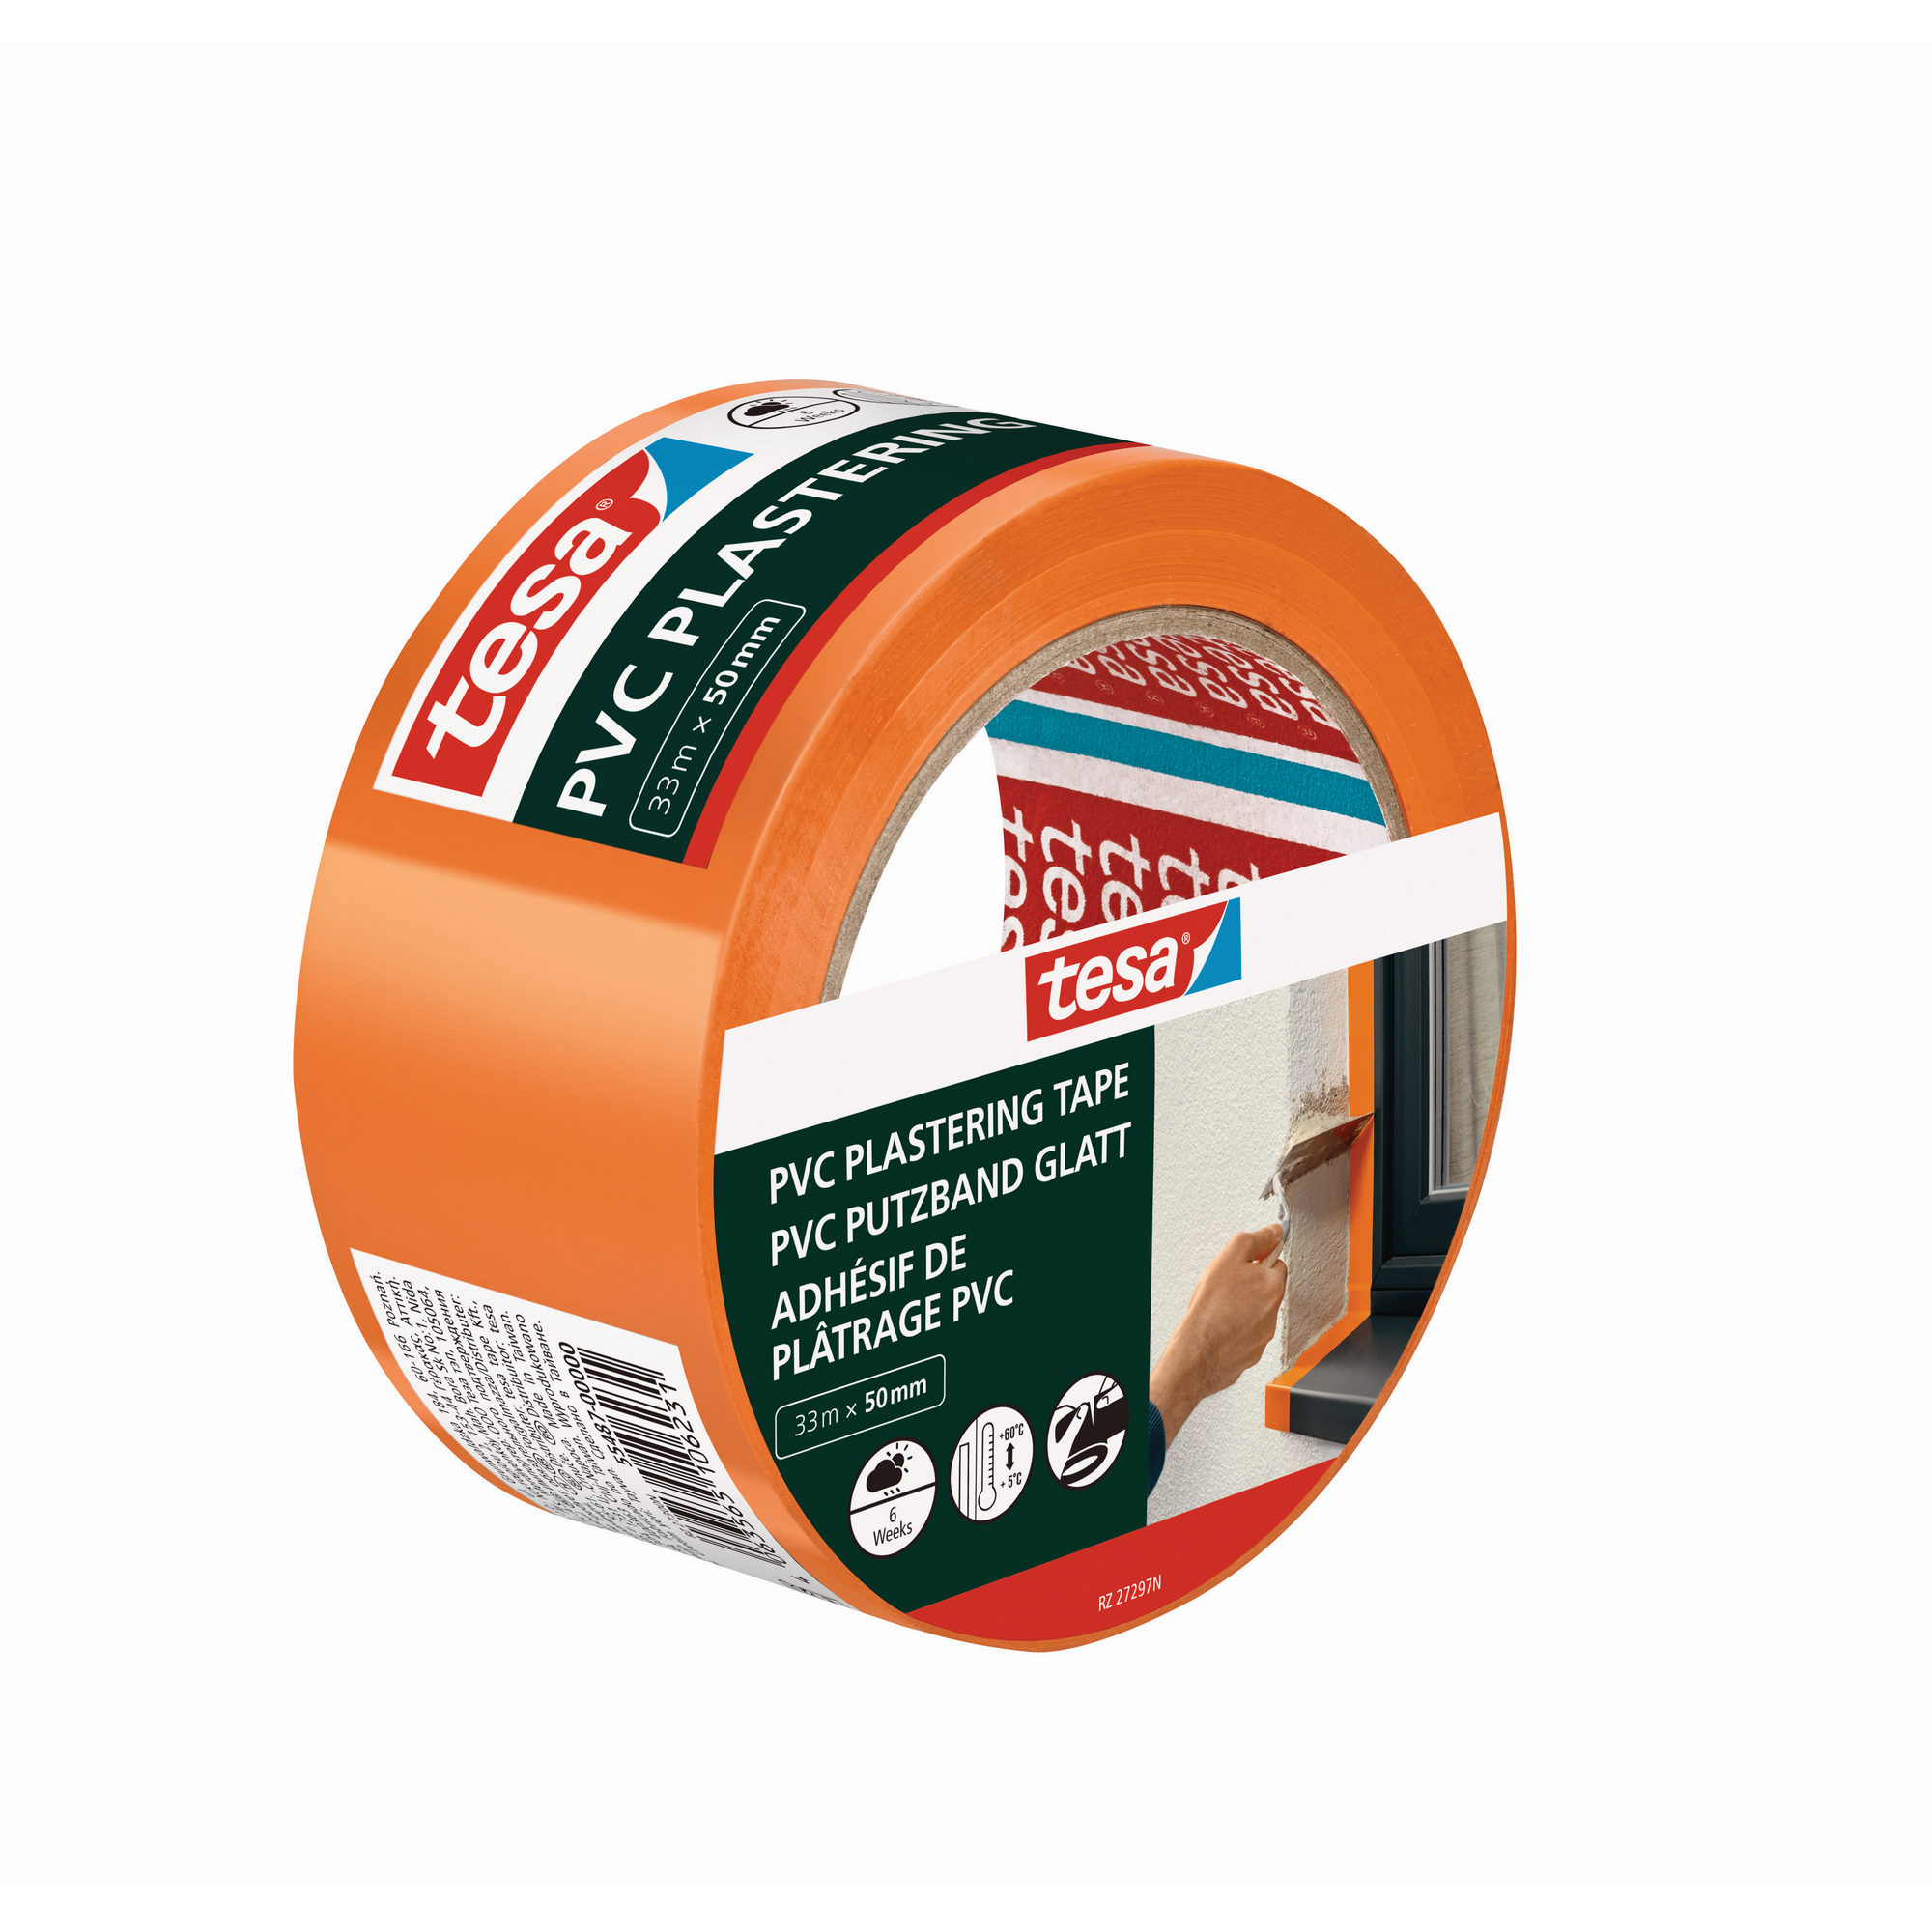 PVC-Putzband glatt orange 50 mm x 33 m + product picture